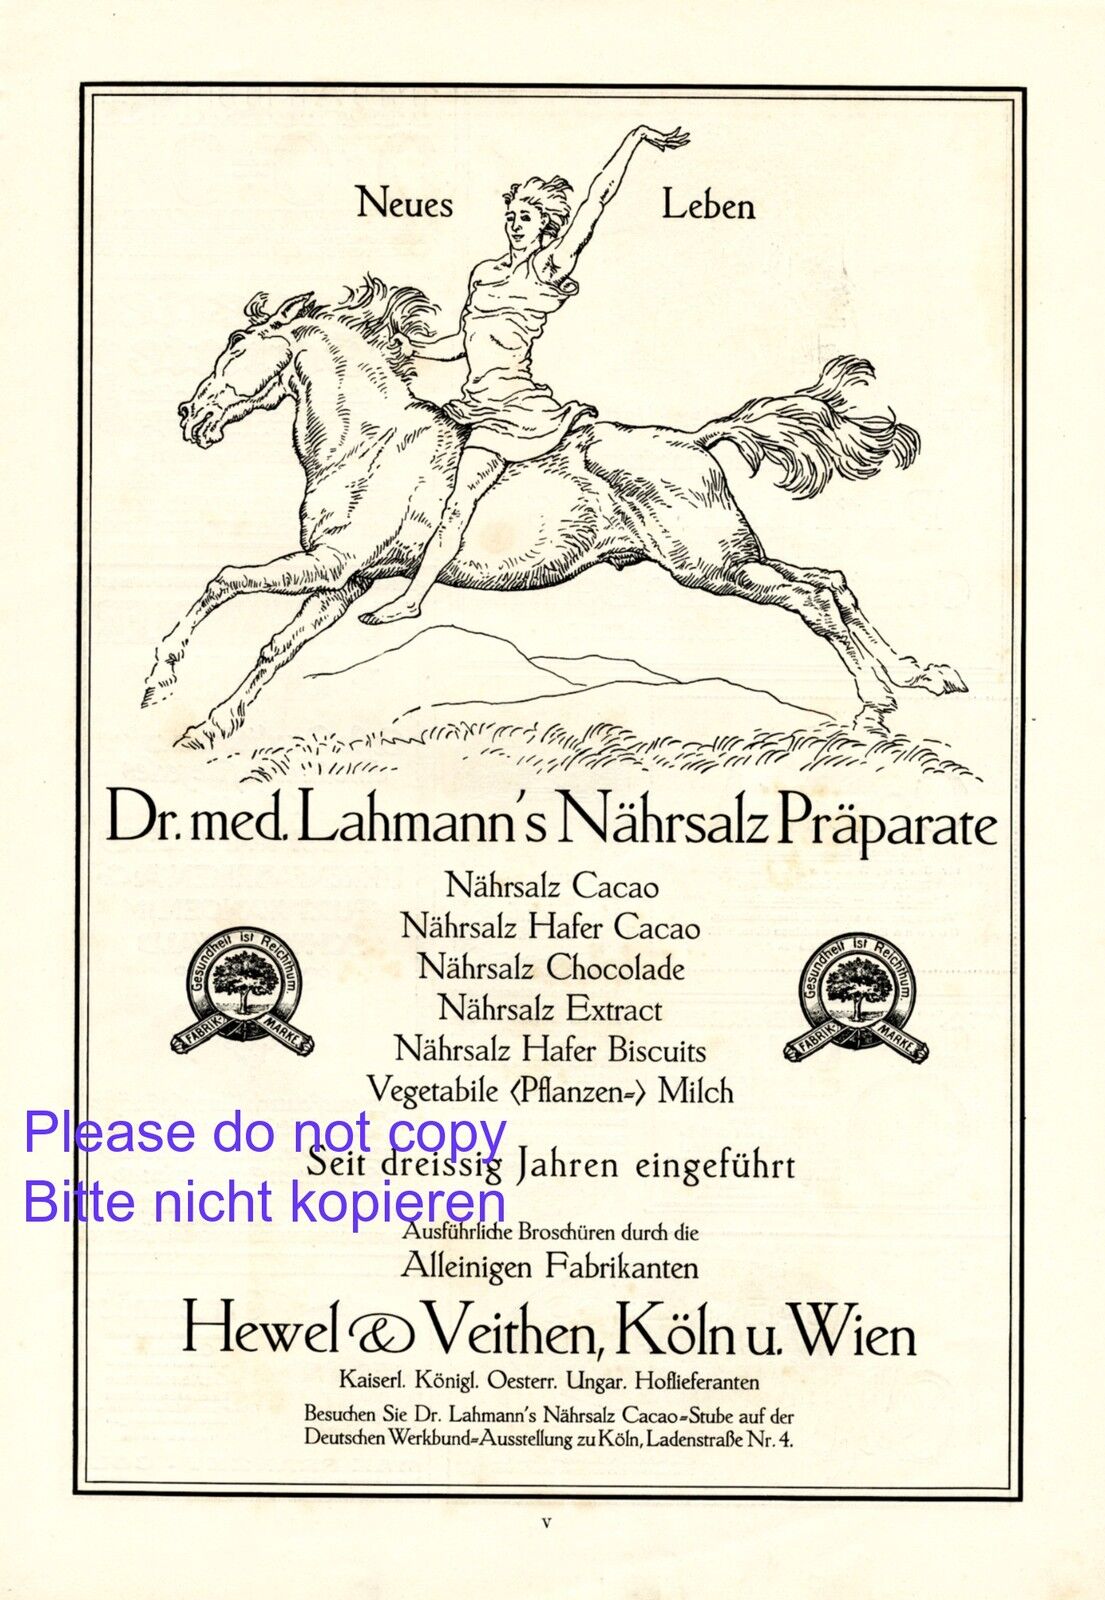 Nutrient salt Dr. Lahmann German XL ad 1914 horse rider Hewel & Veithen cologne